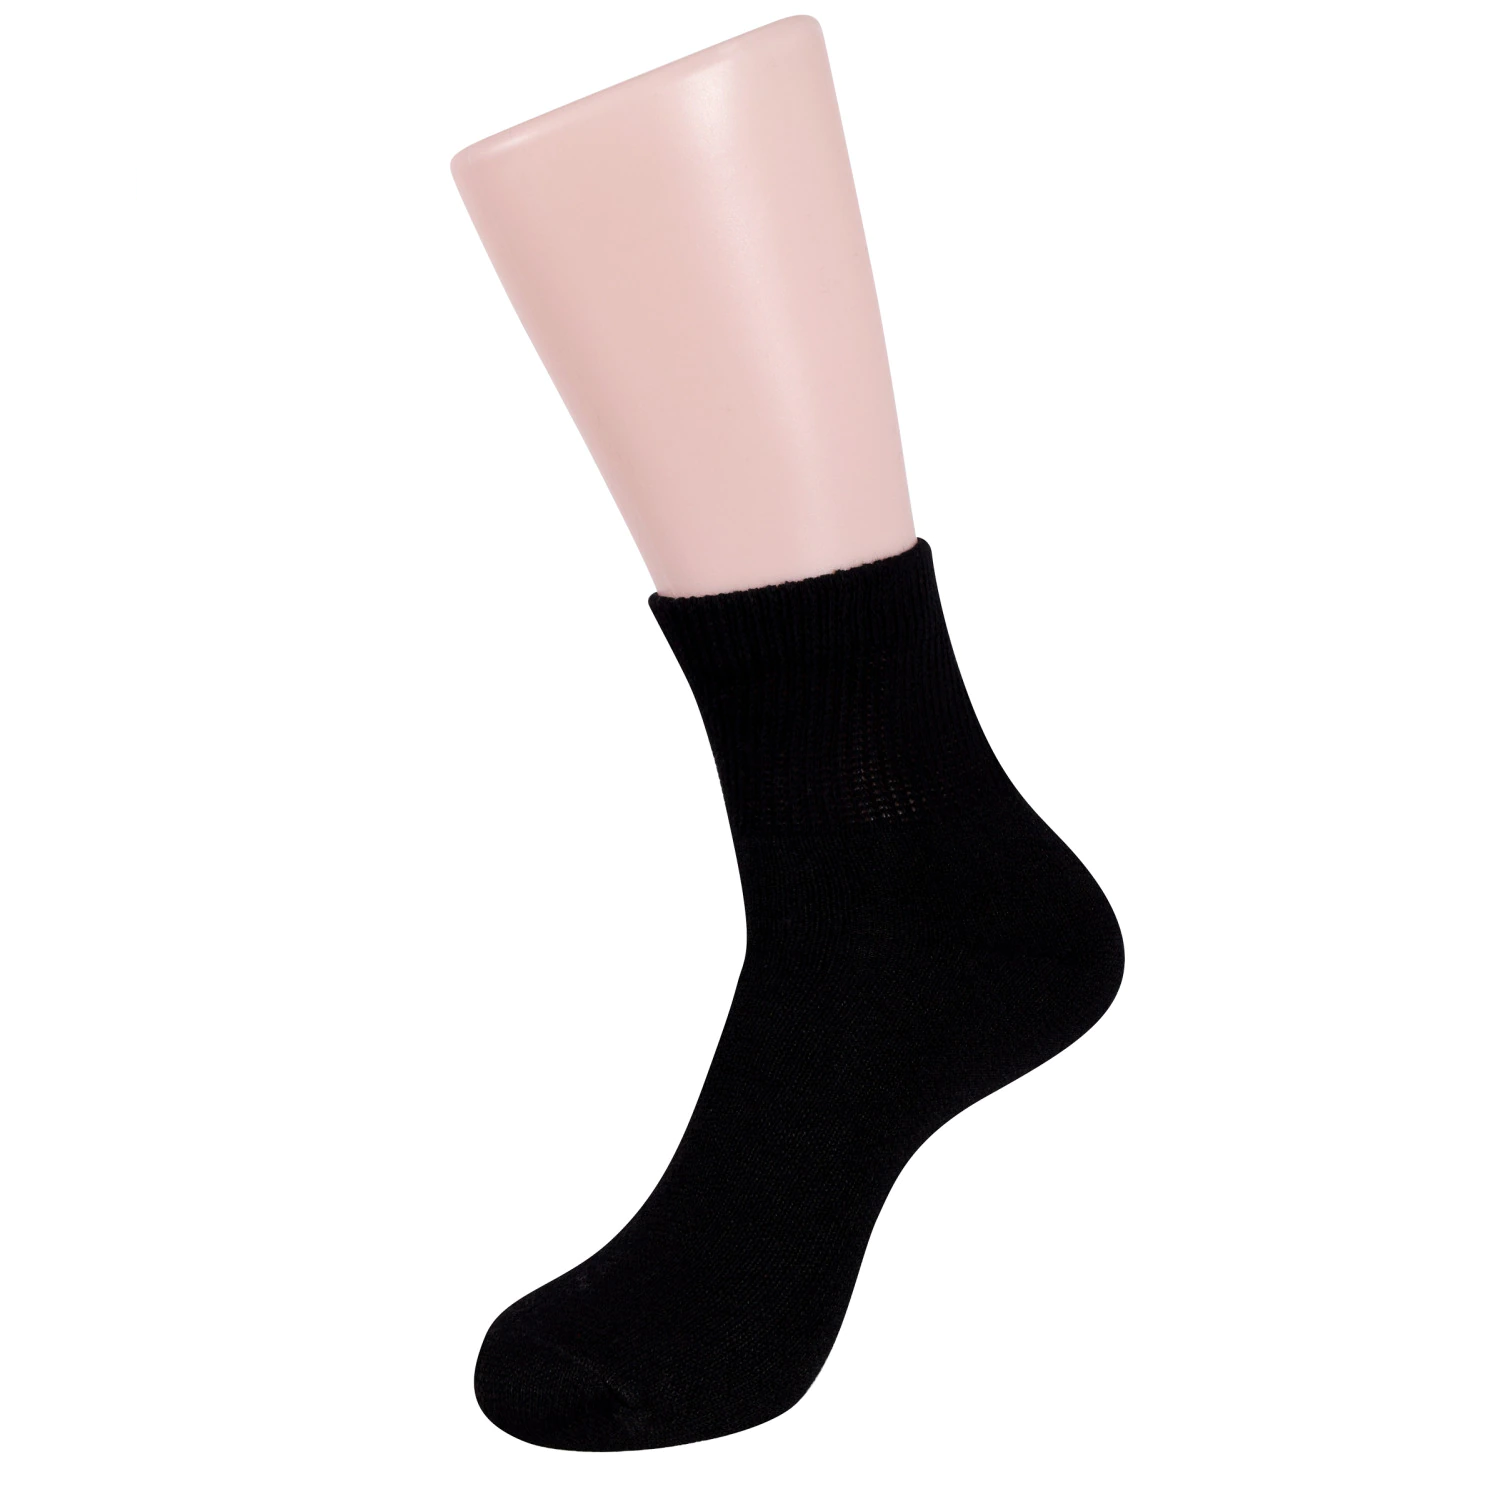 Women's Black Diabetic Quarter Socks - set of 3 pairs